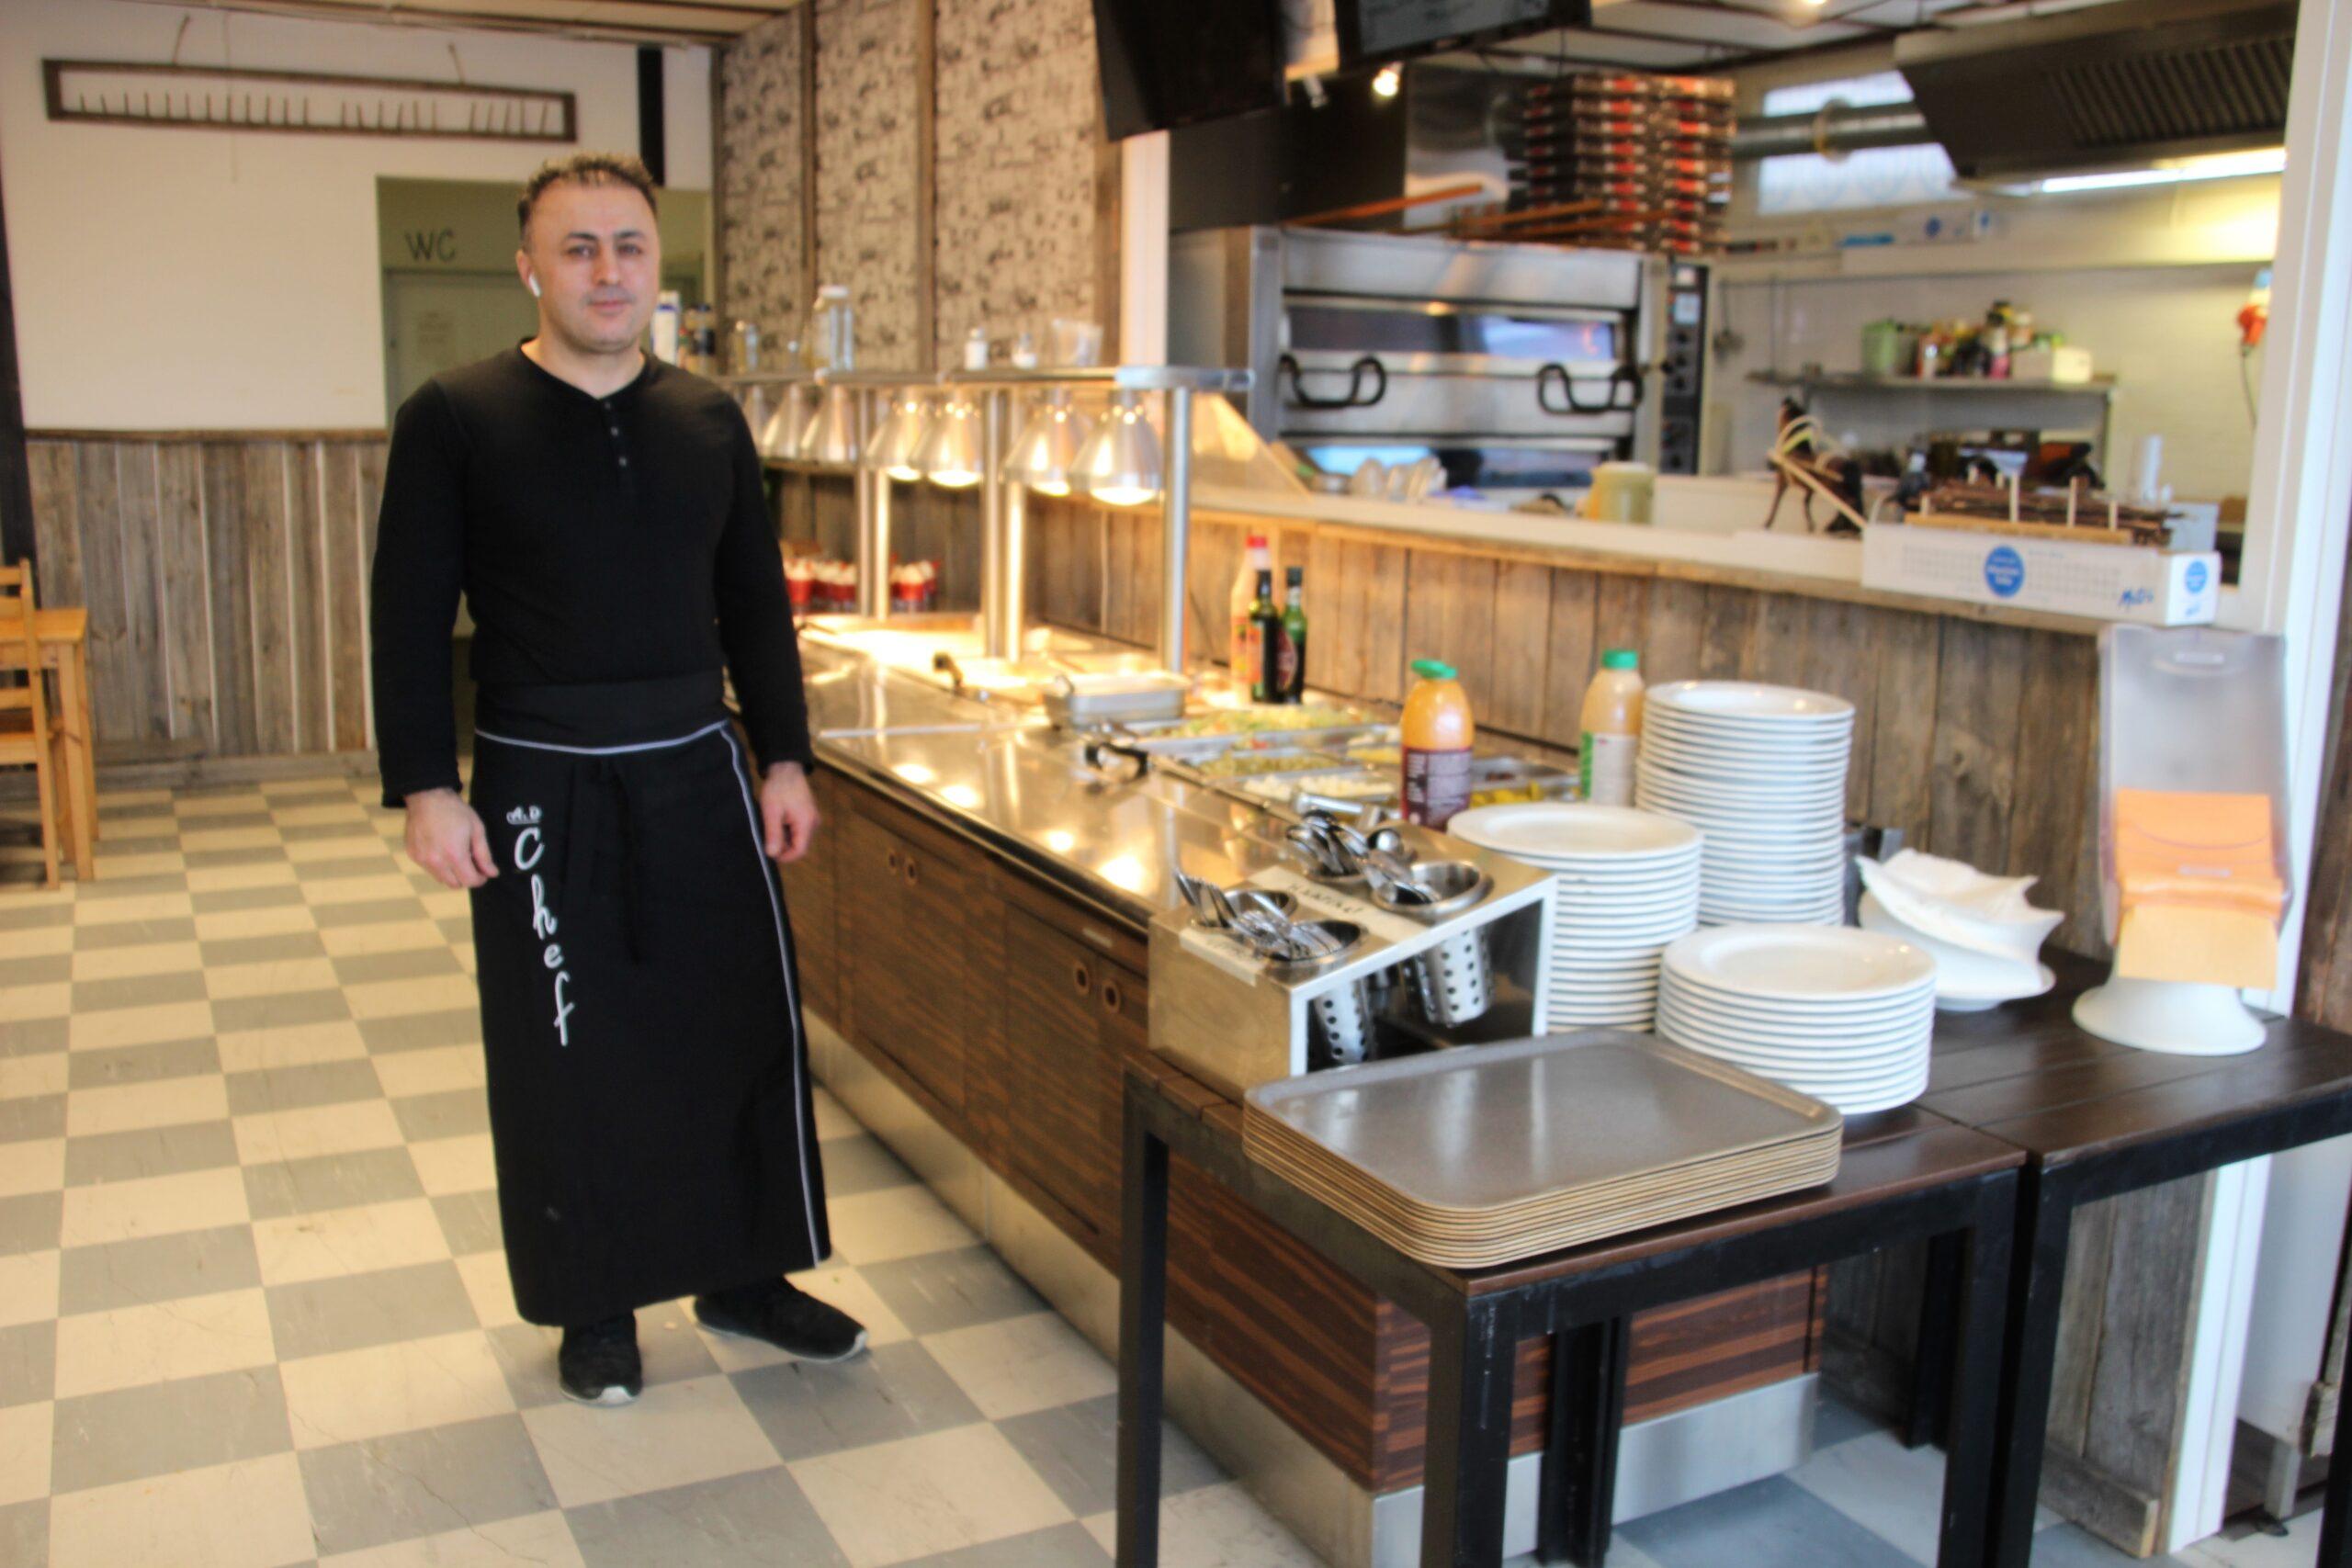 Yrittäjä Pedros oikealta nimeltään Nouraddin on pyörittänyt kebab pizzeriaansa Kortesjärvellä jo 7 vuoden ajan.